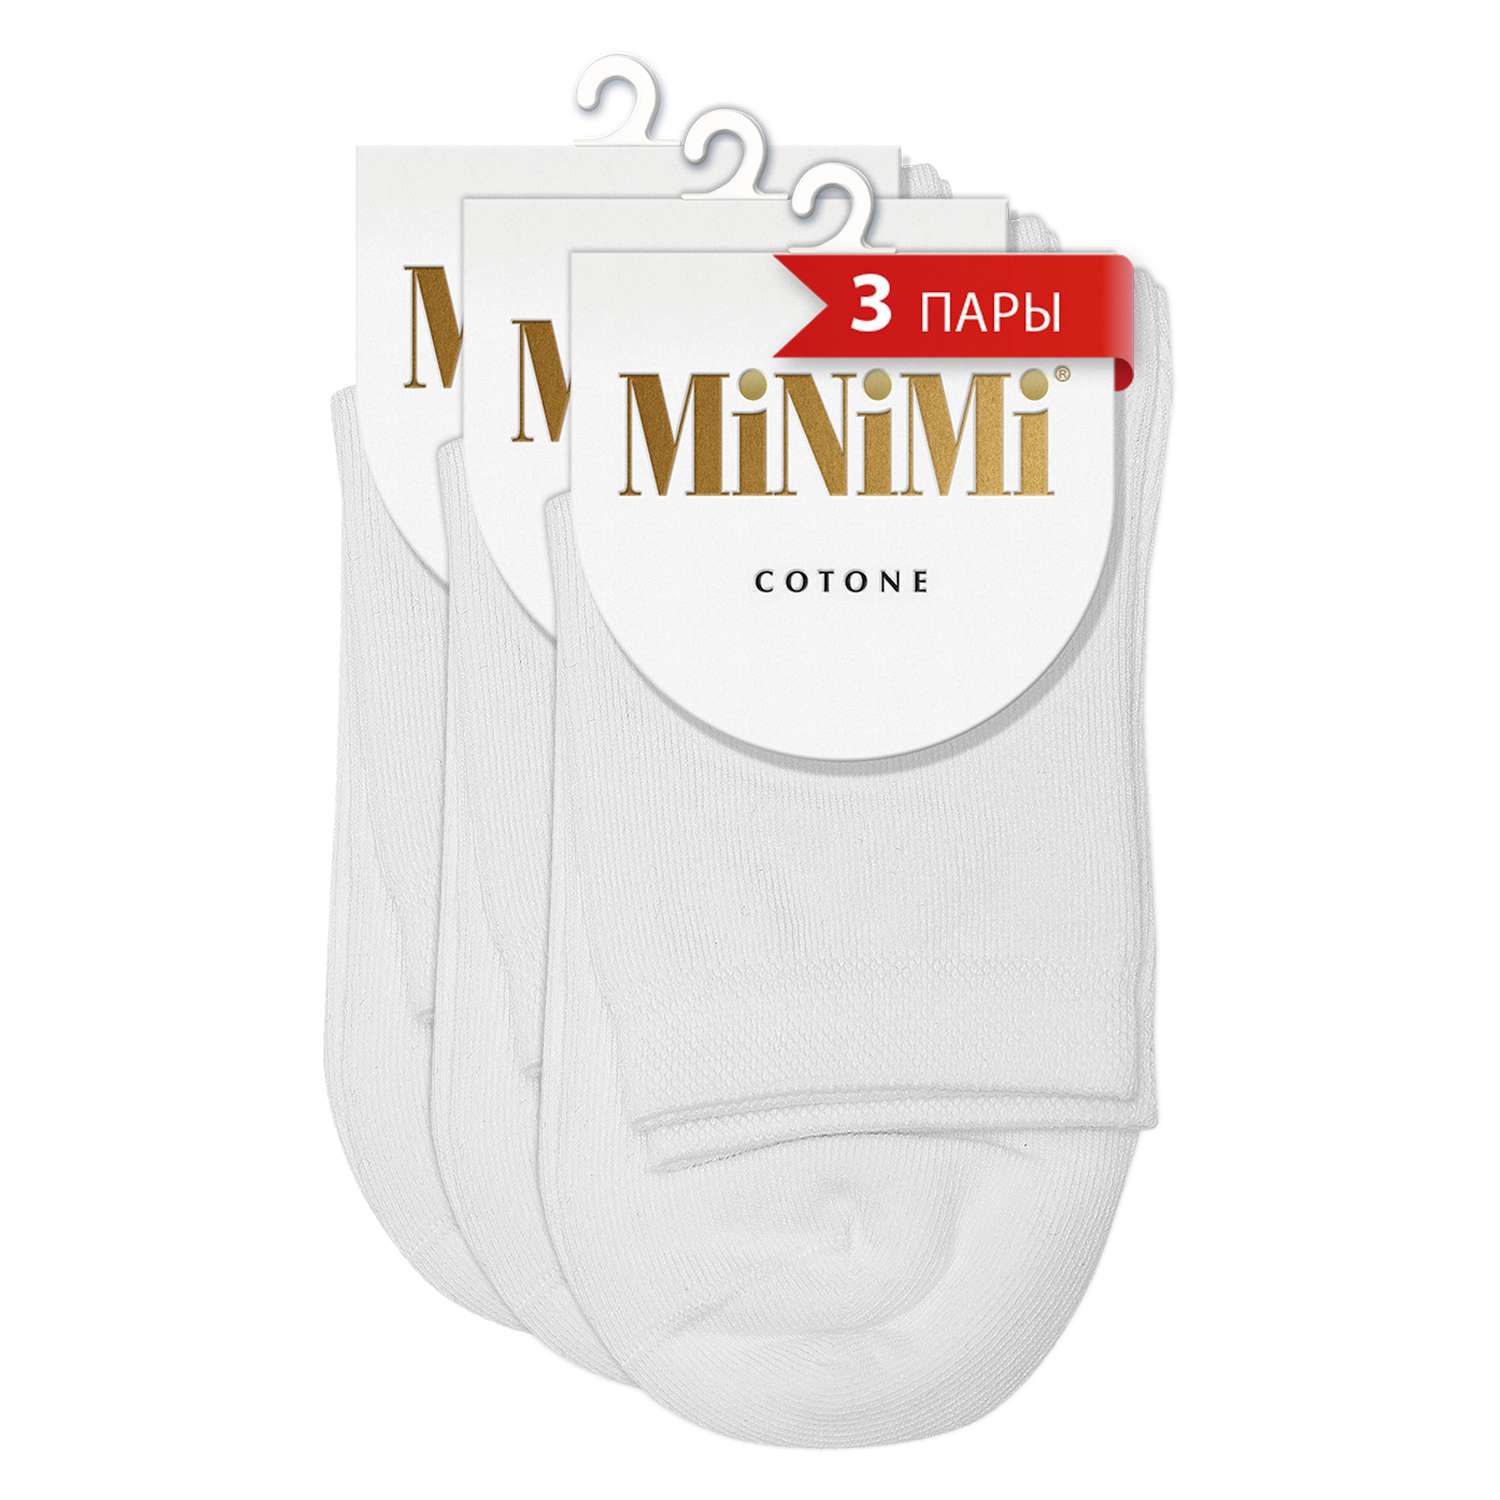 Носки MiNiMi   MINI COTONE 1202 однотонный Bianco (спайка 3 штуки) - фото 1